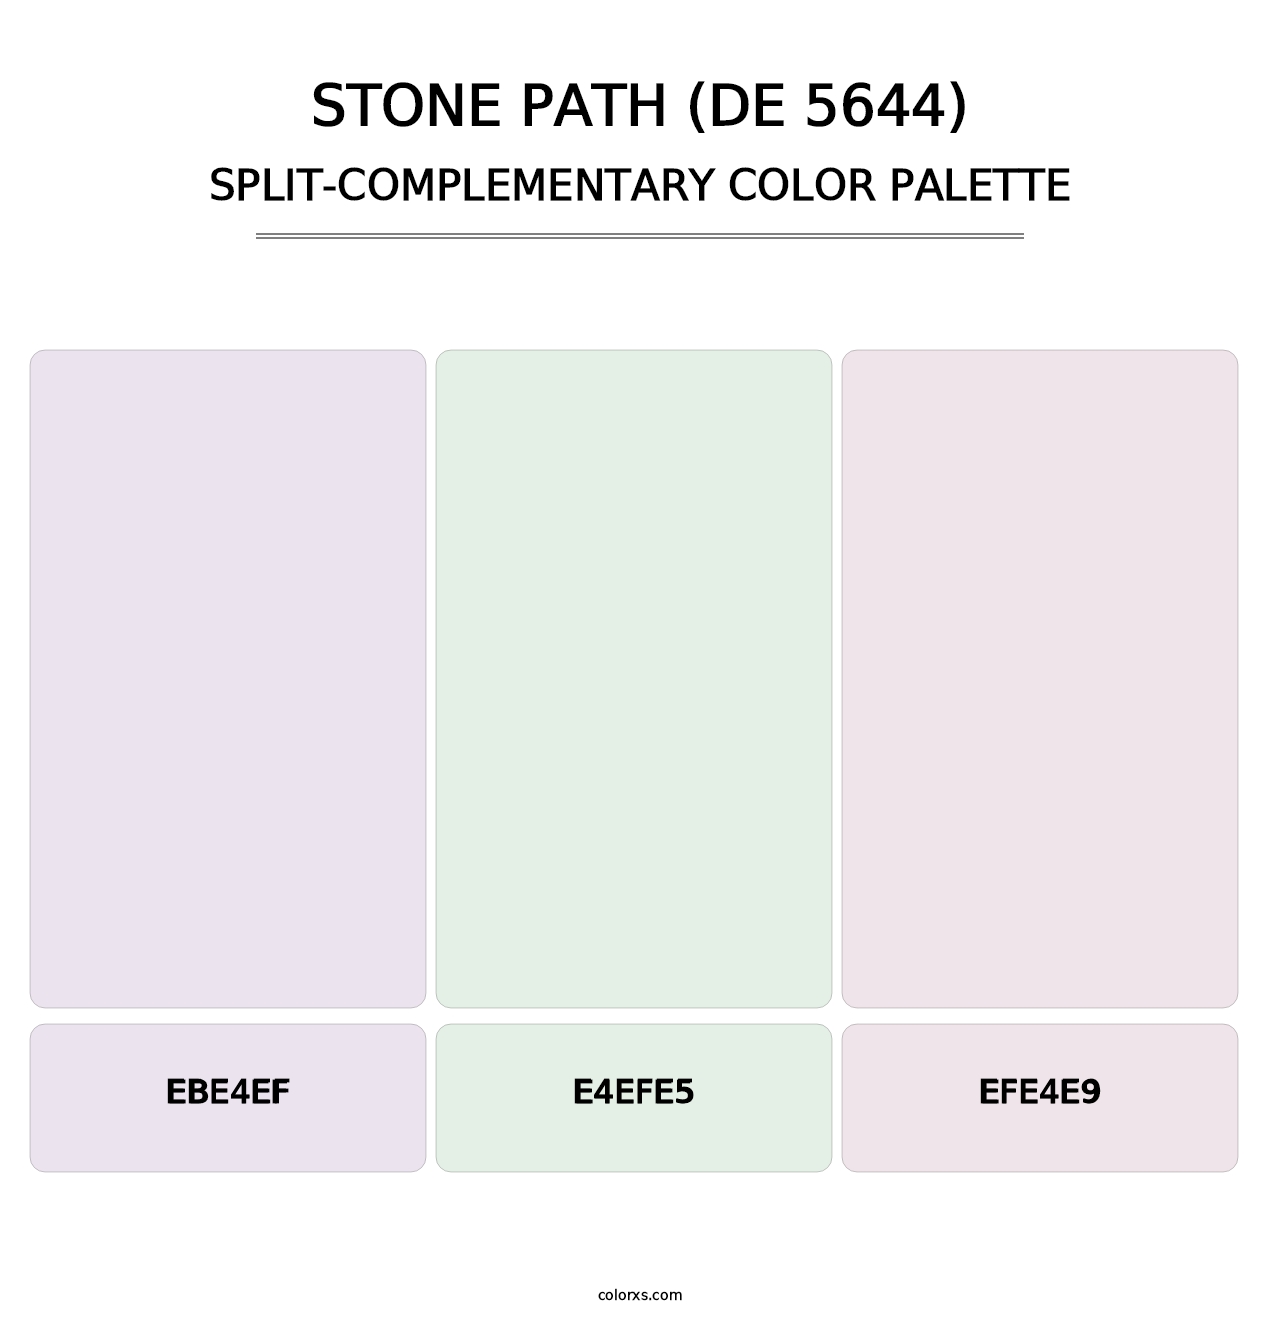 Stone Path (DE 5644) - Split-Complementary Color Palette